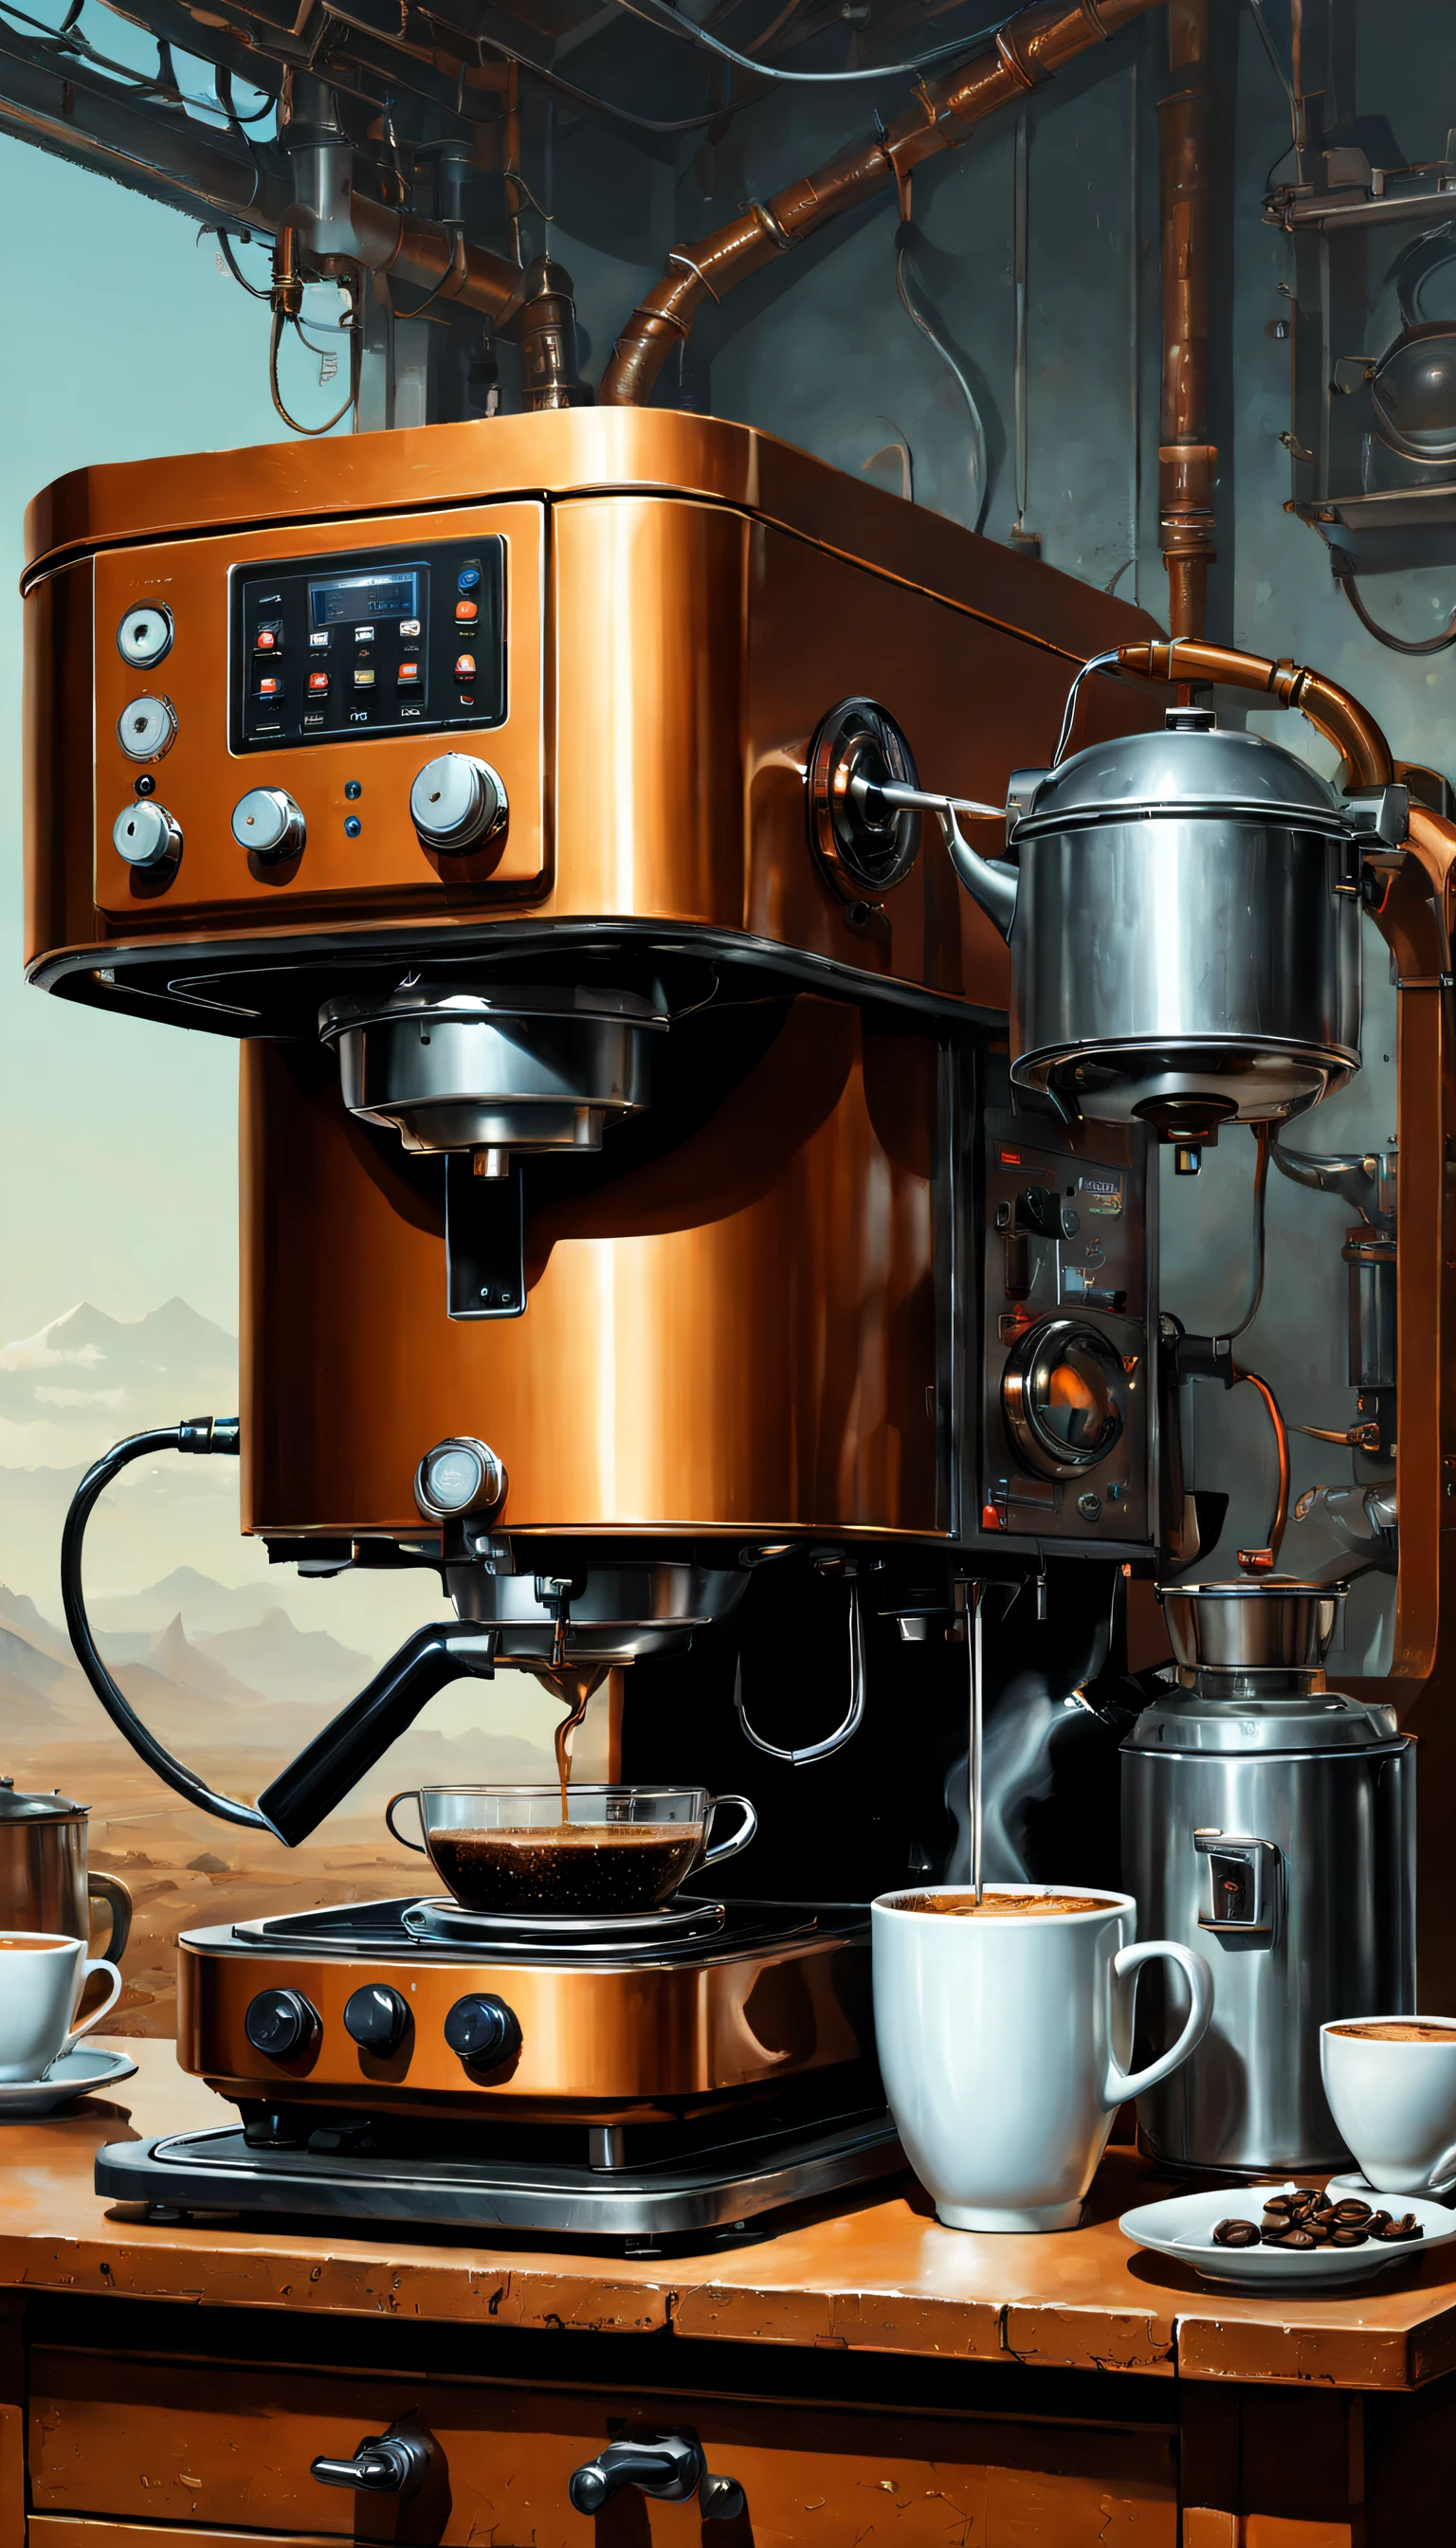 （Máquinas de café），（Hervidor eléctrico），（máquina de molienda），（olla arrocera），tierras baldías, arte de ciencia ficción, Dennis Ruston